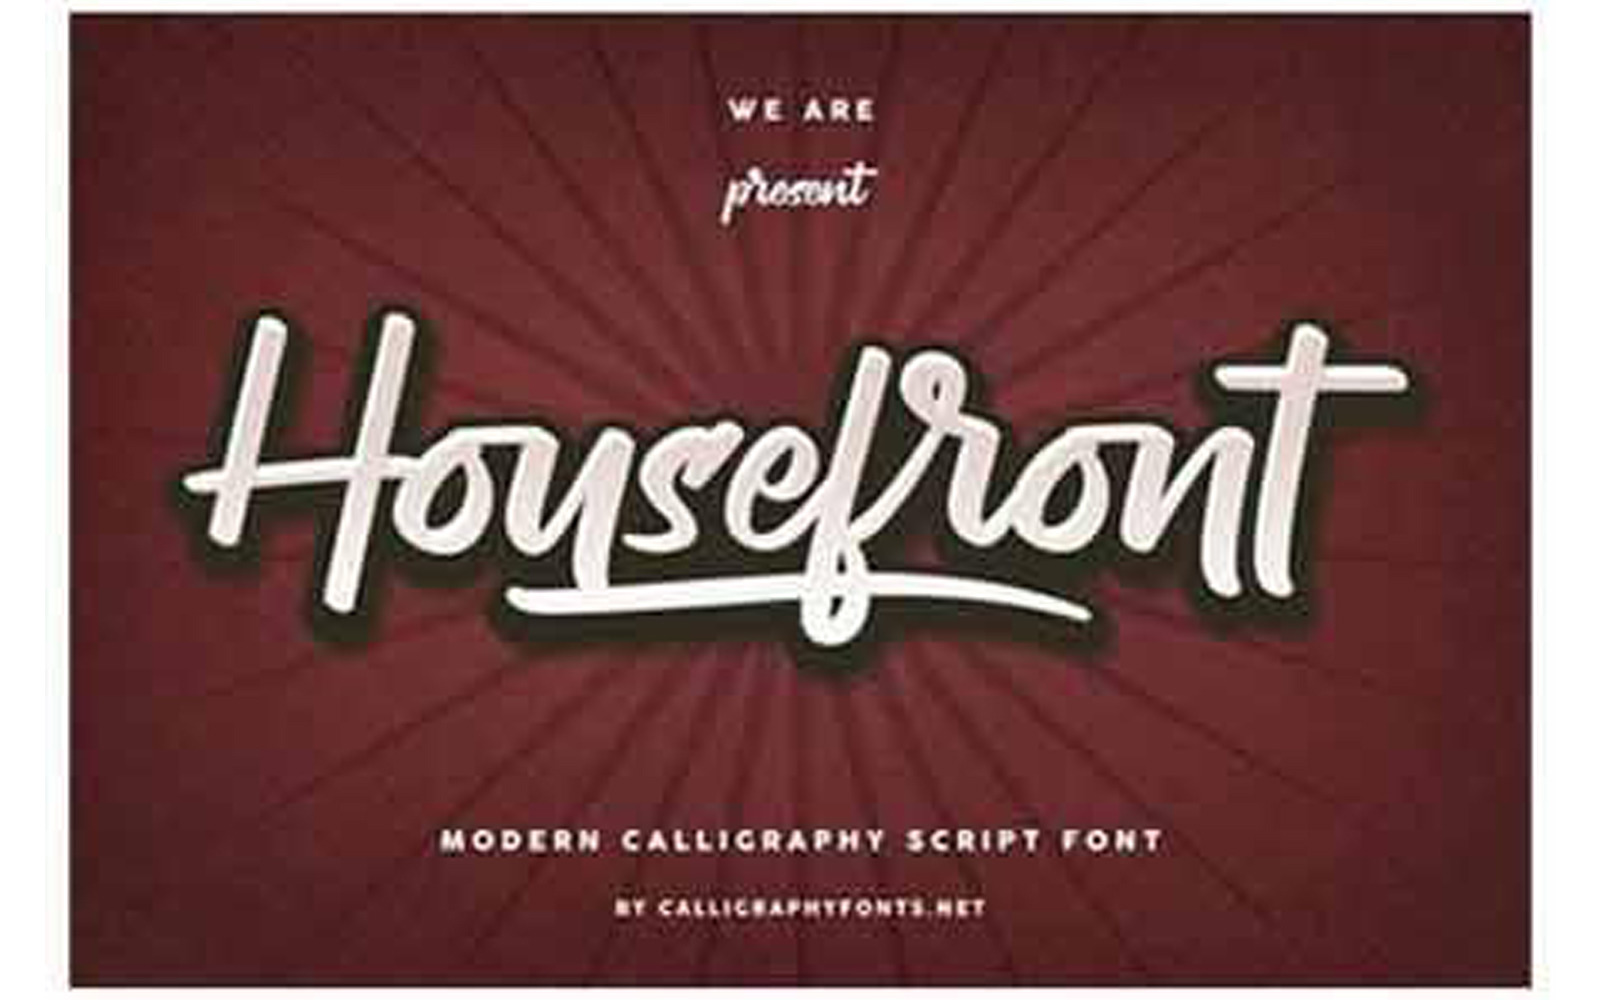 Housefront Font - Housefront Font #218885 - TemplateMonster